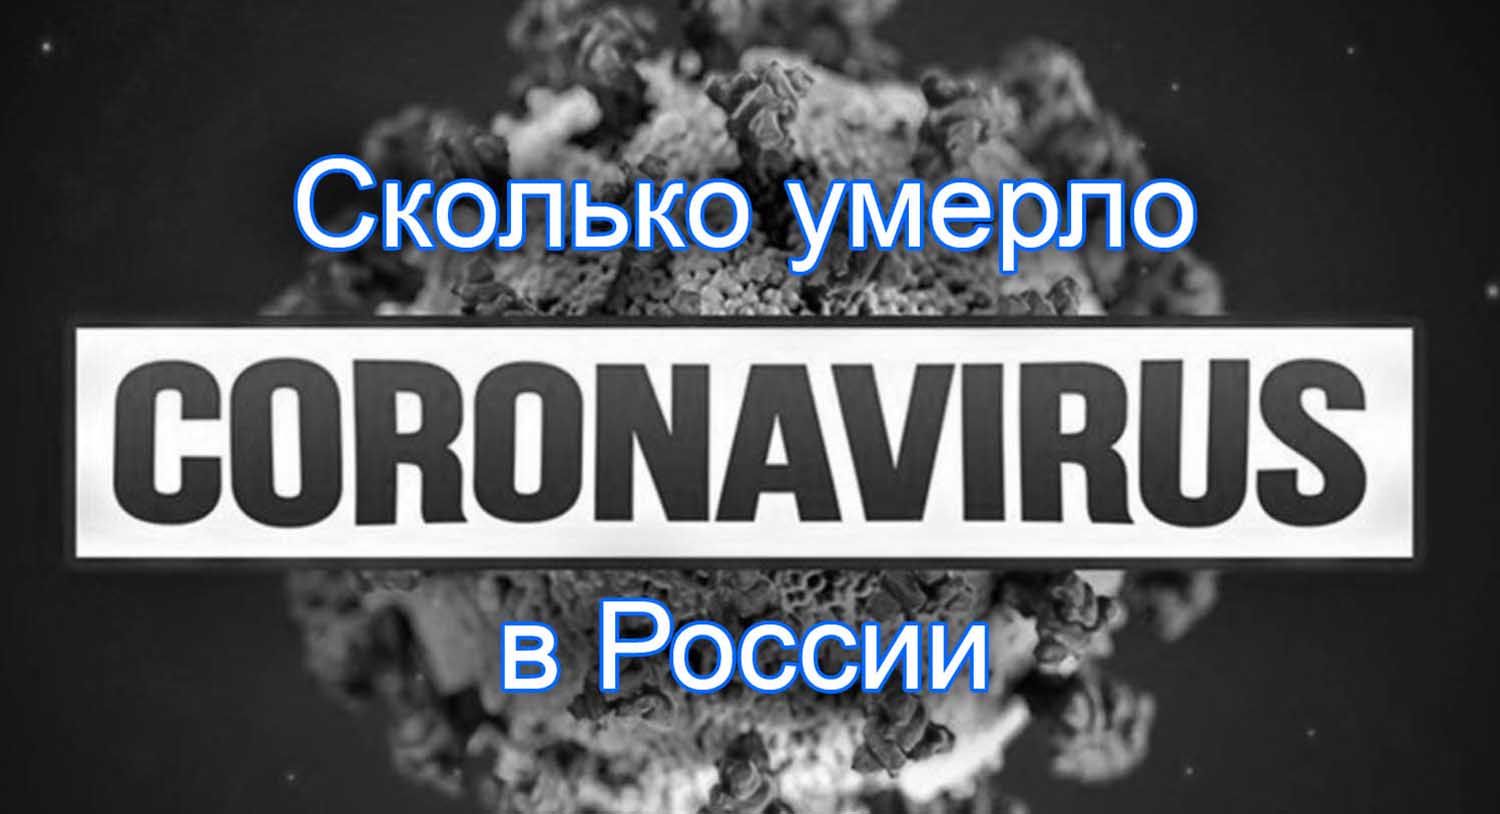 Сколько умерло от коронавируса в России